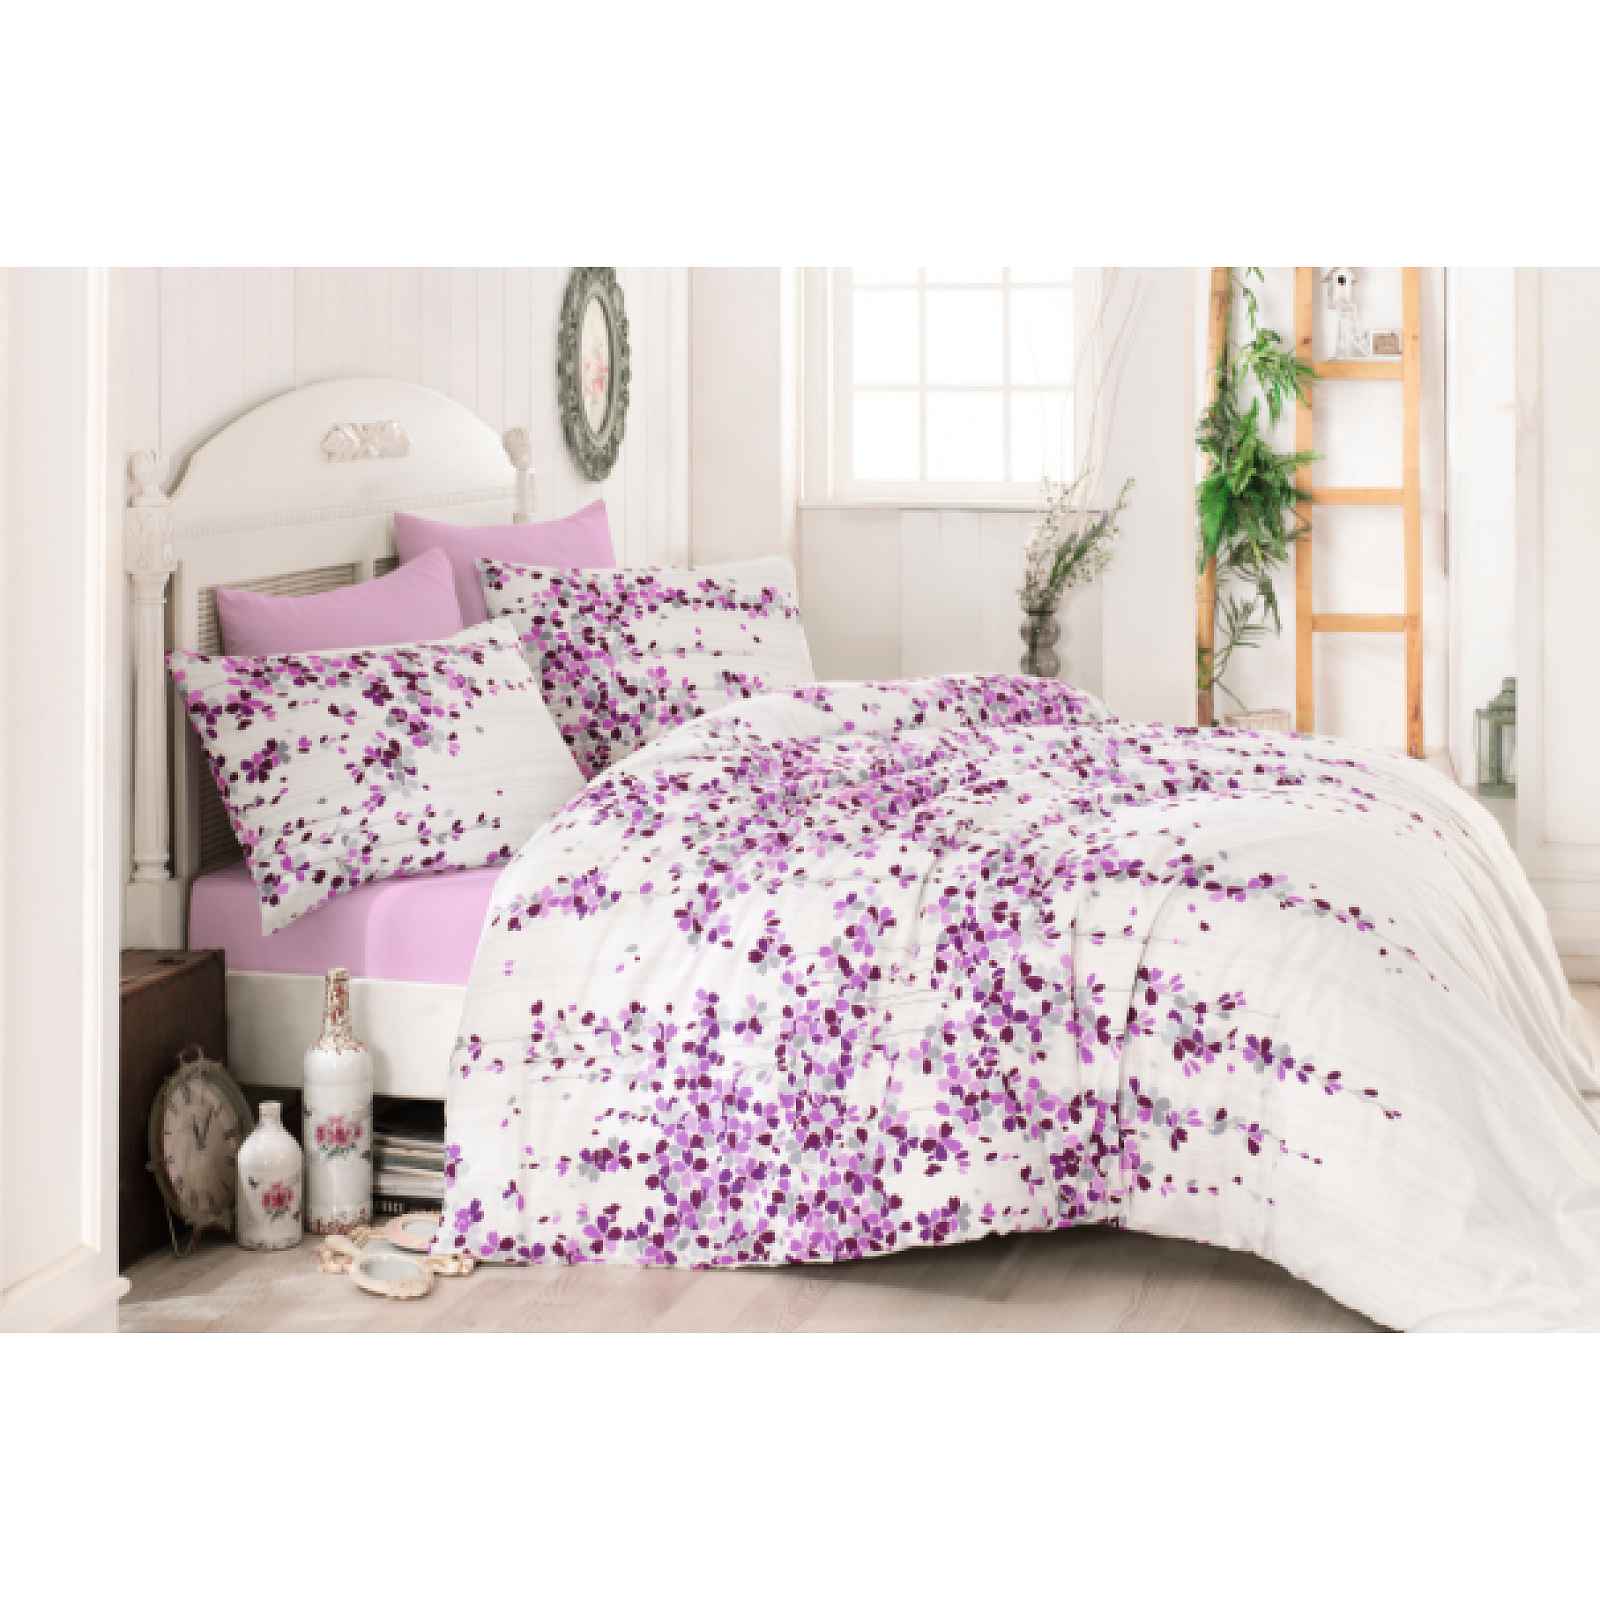 Klinmam Home povlečení Time Pink V3 Lilac z Renforcé bavlny s šedými a fialovými květy, 140x200 cm + 50x70 cm